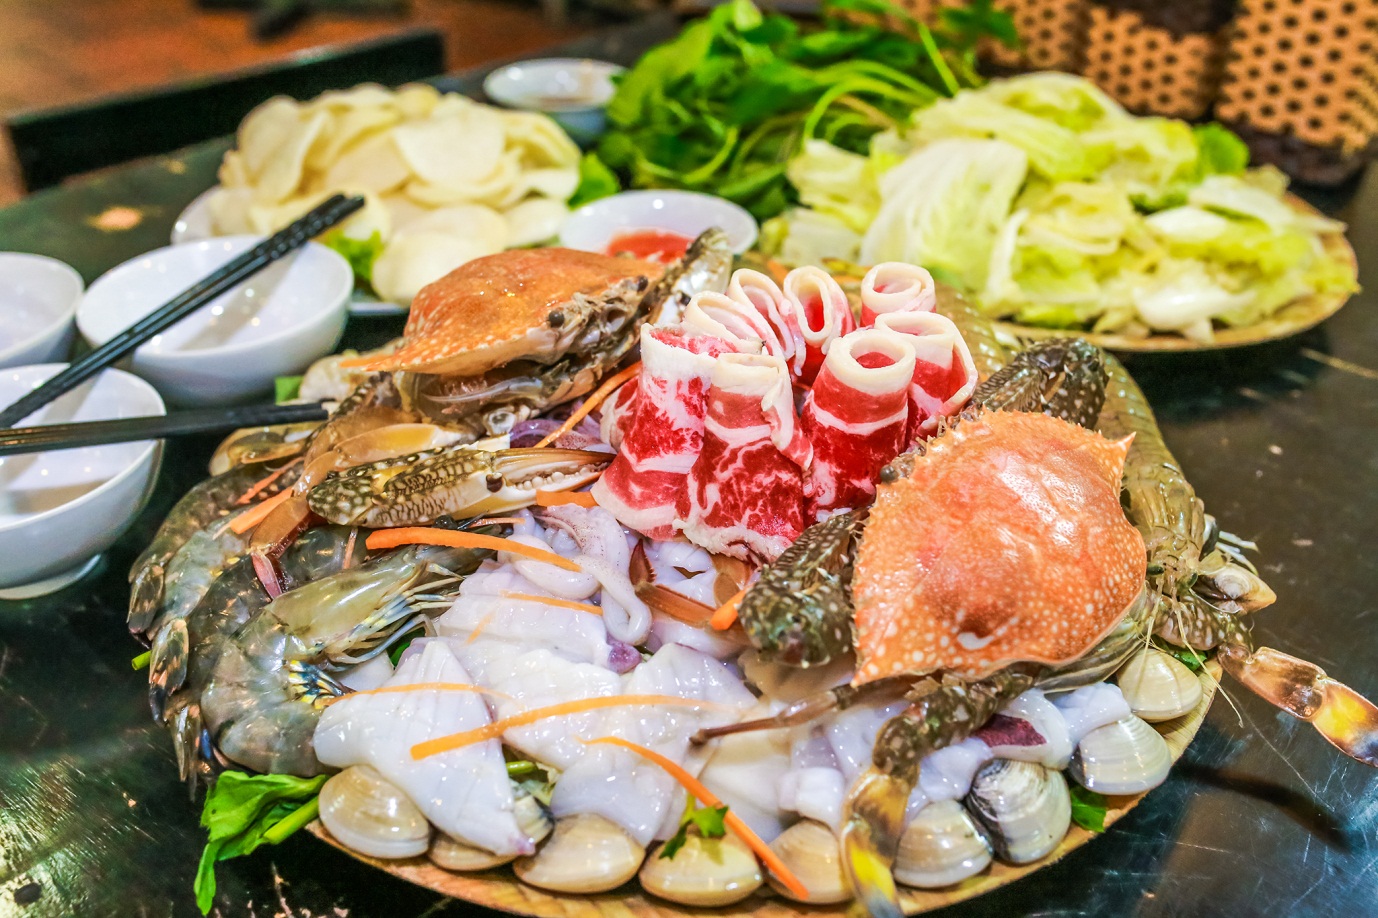  Lẩu hải sản Đà Nẵng: Một trải nghiệm ẩm thực tuyệt vời